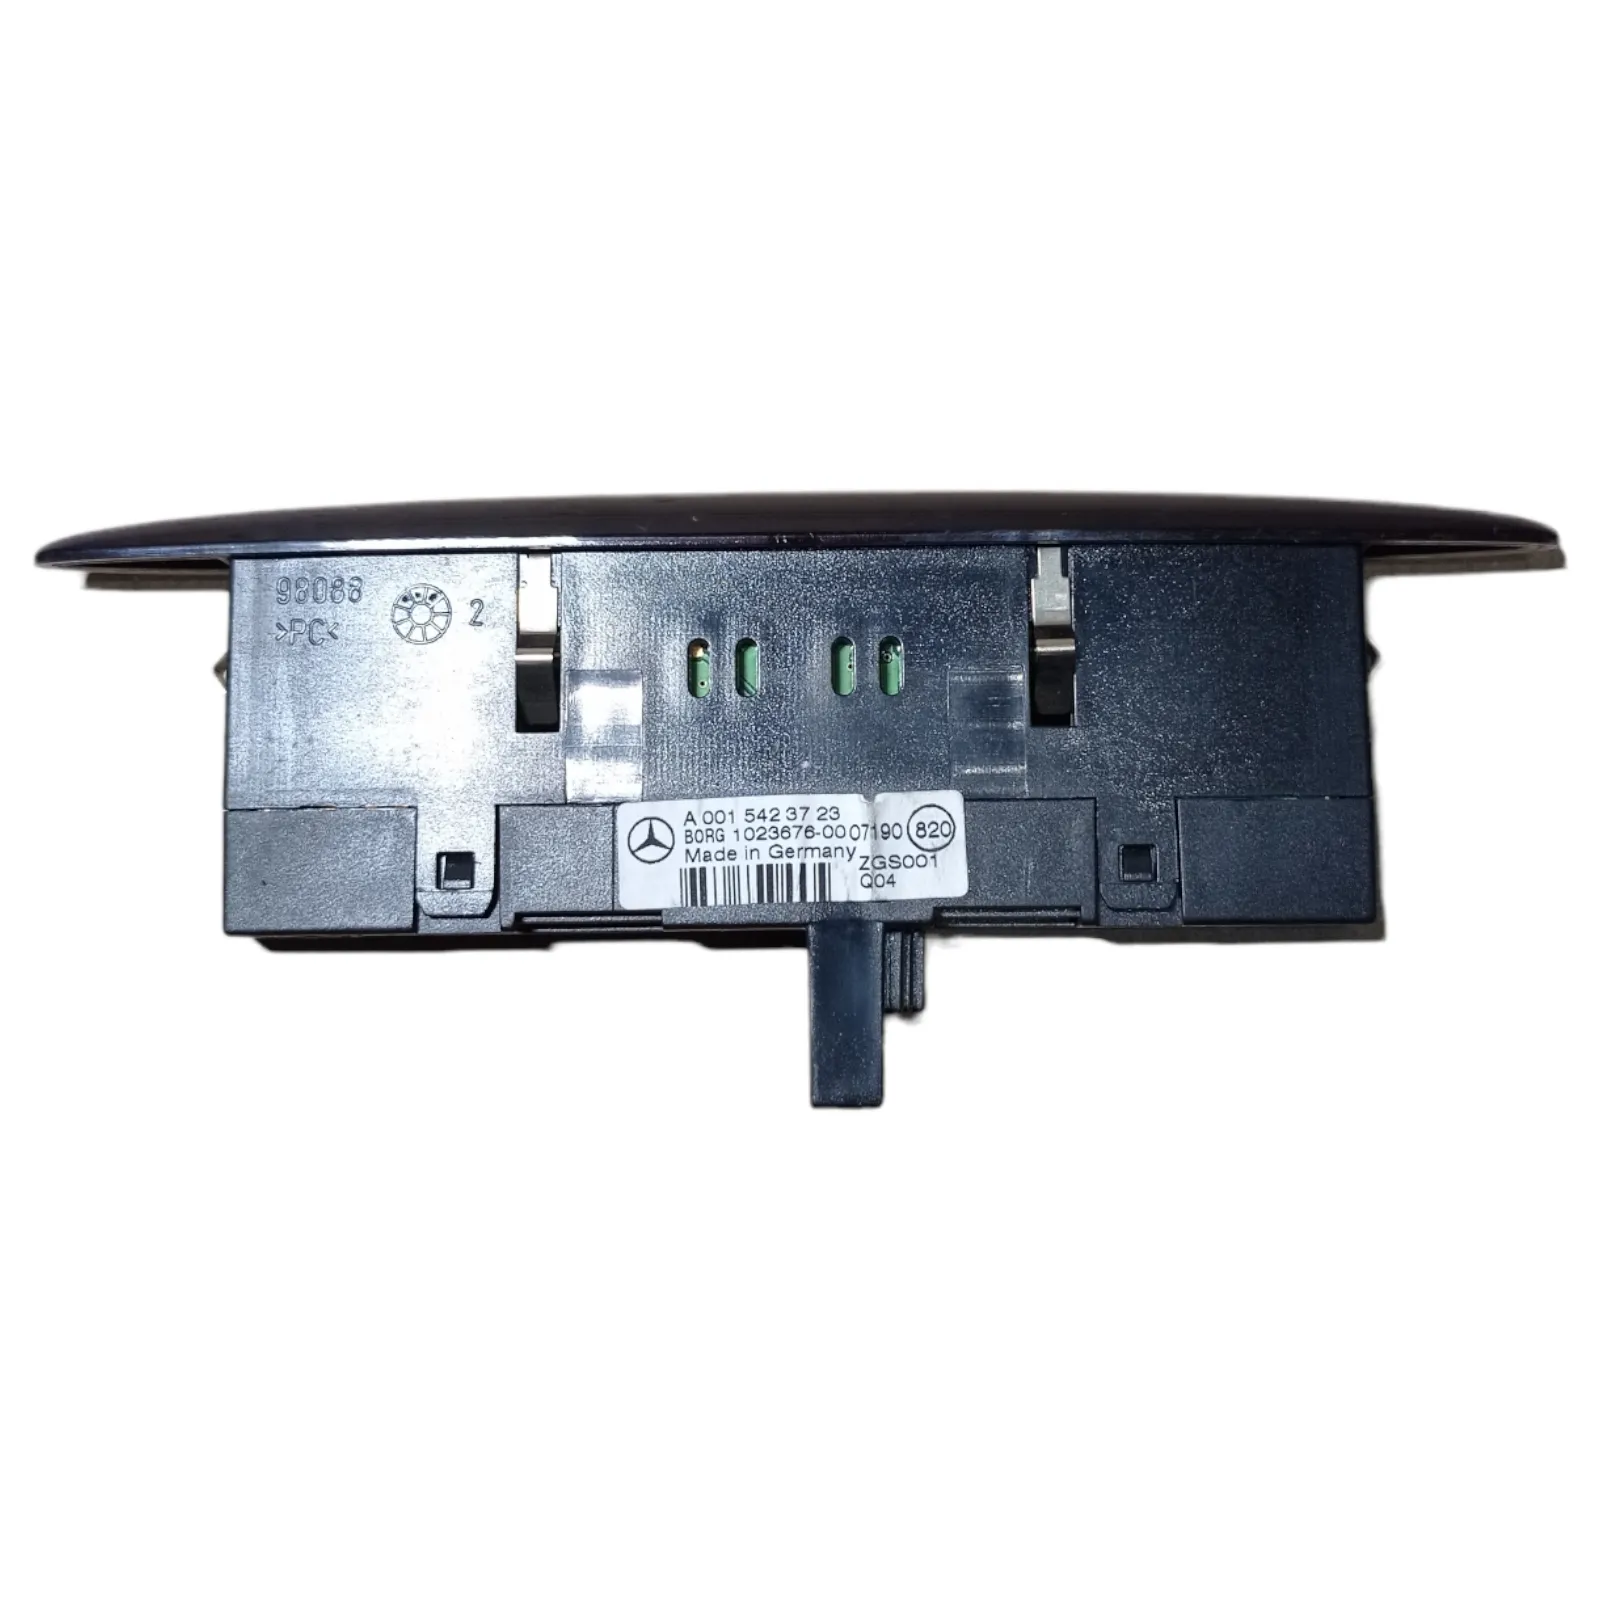 Предупредително устройство за парктроник Mercedes R-class W251 (2006-2010)-[A 001 542 37 23] 2